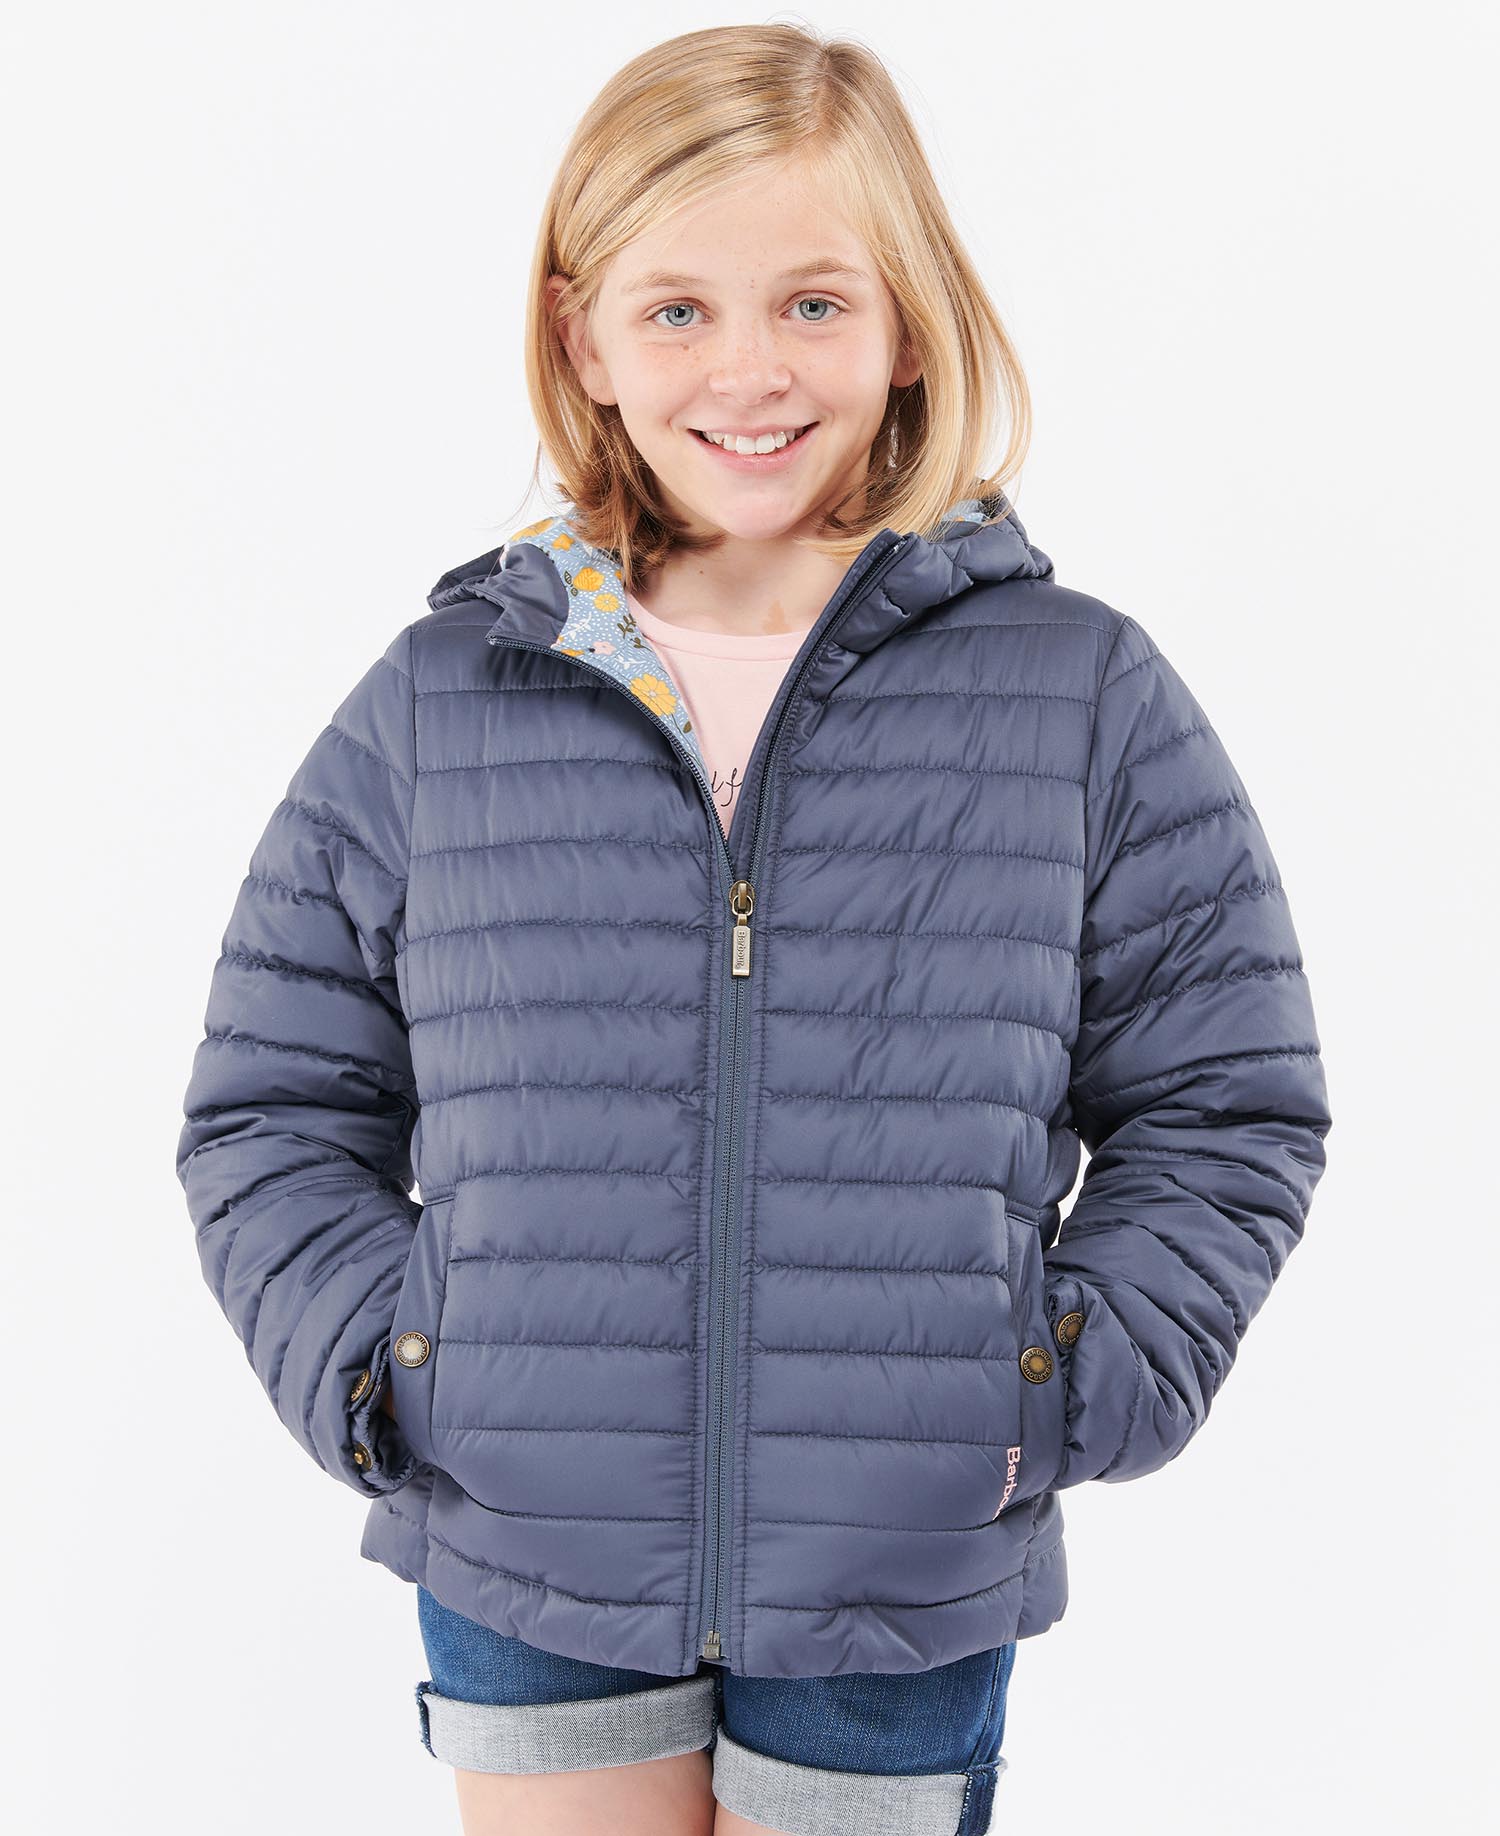 正規商品販売店 Barbour childrens bedale jacket xl | yasnabeauty.com